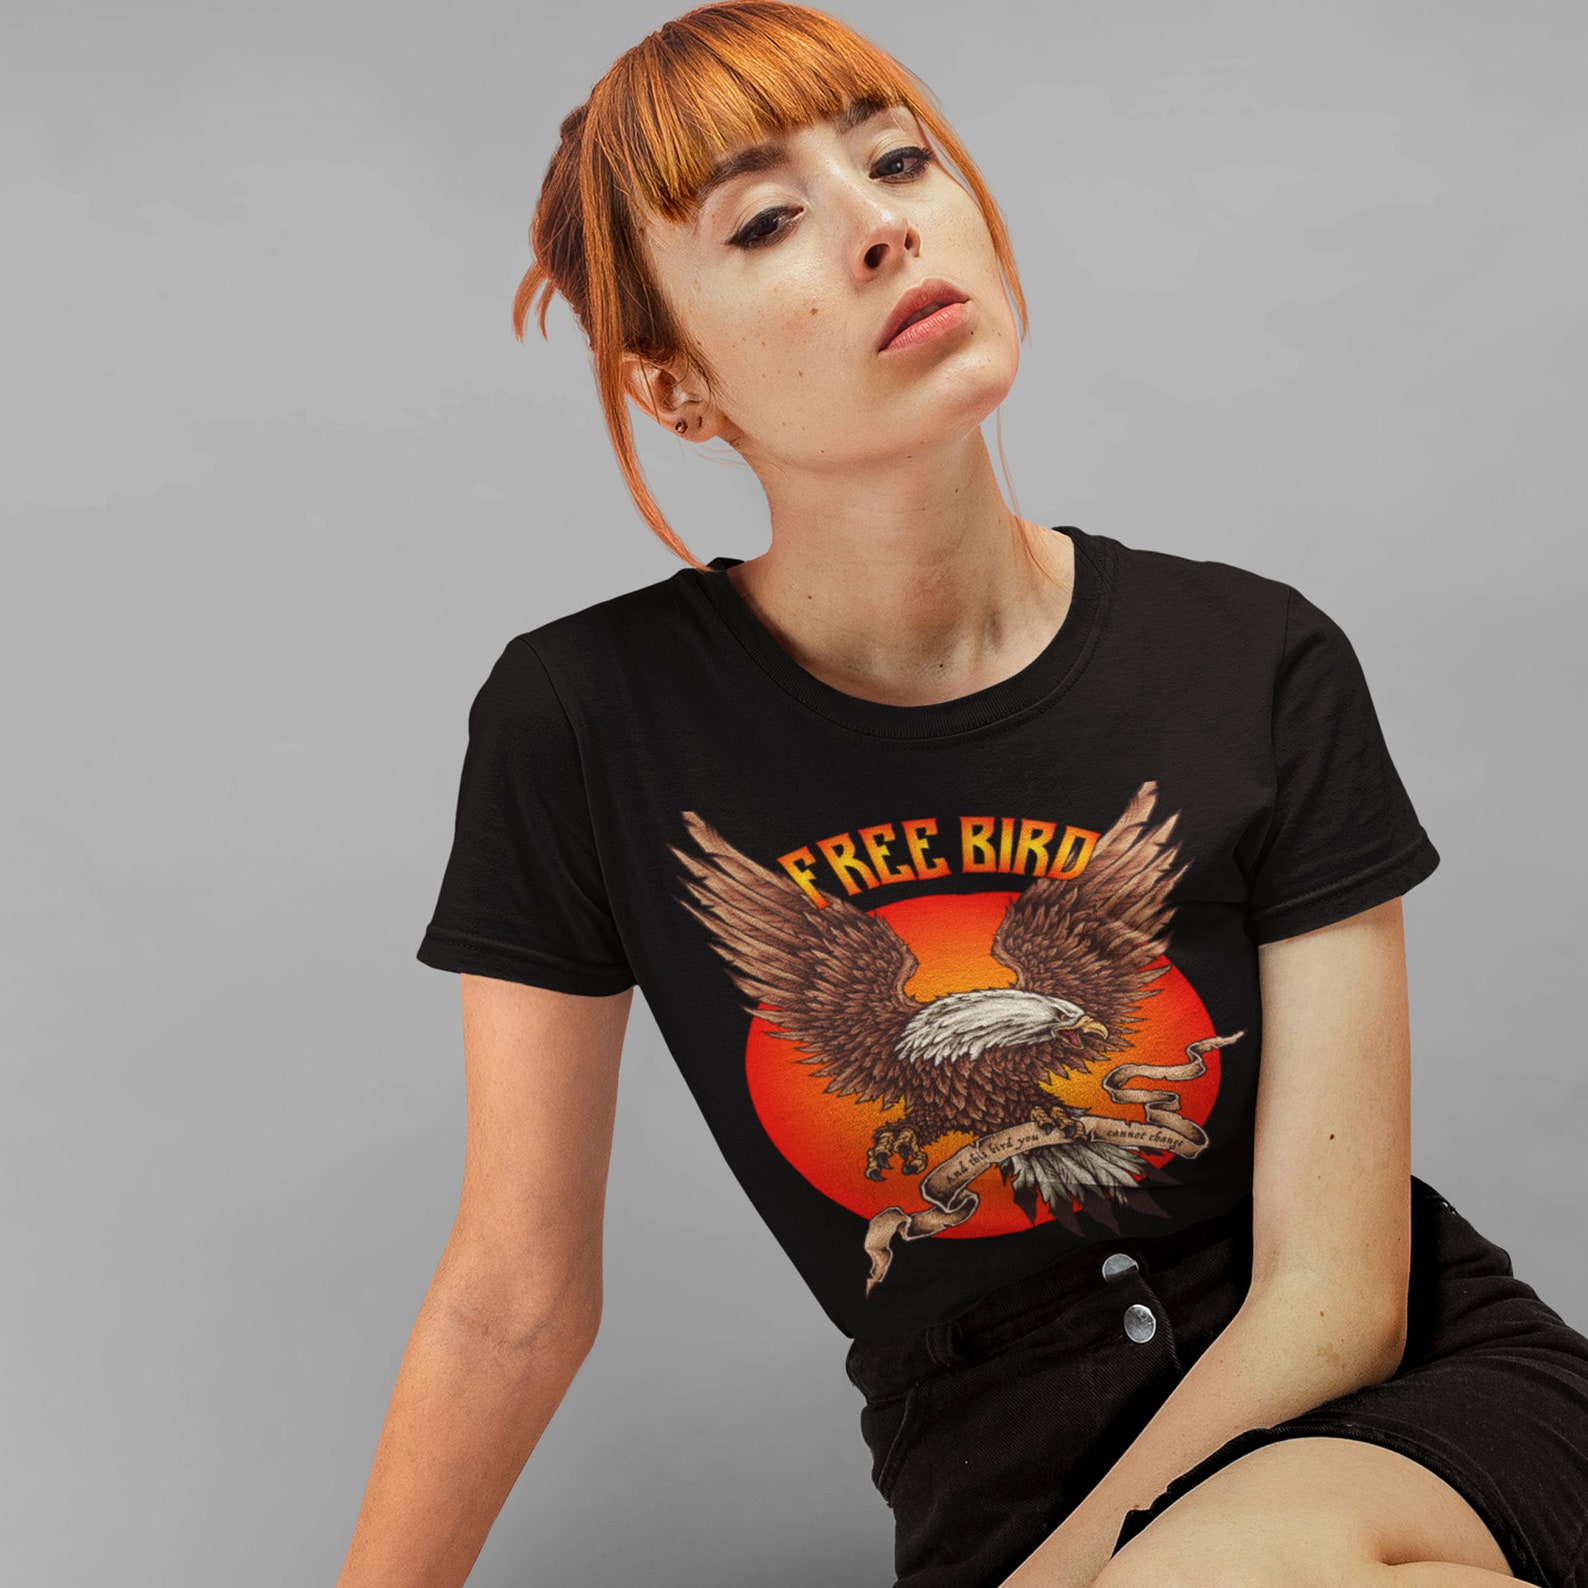 Lynyrd Skynyrd Shirt Women Free Bird T Shirt Lynyrd Skynyrd | Etsy